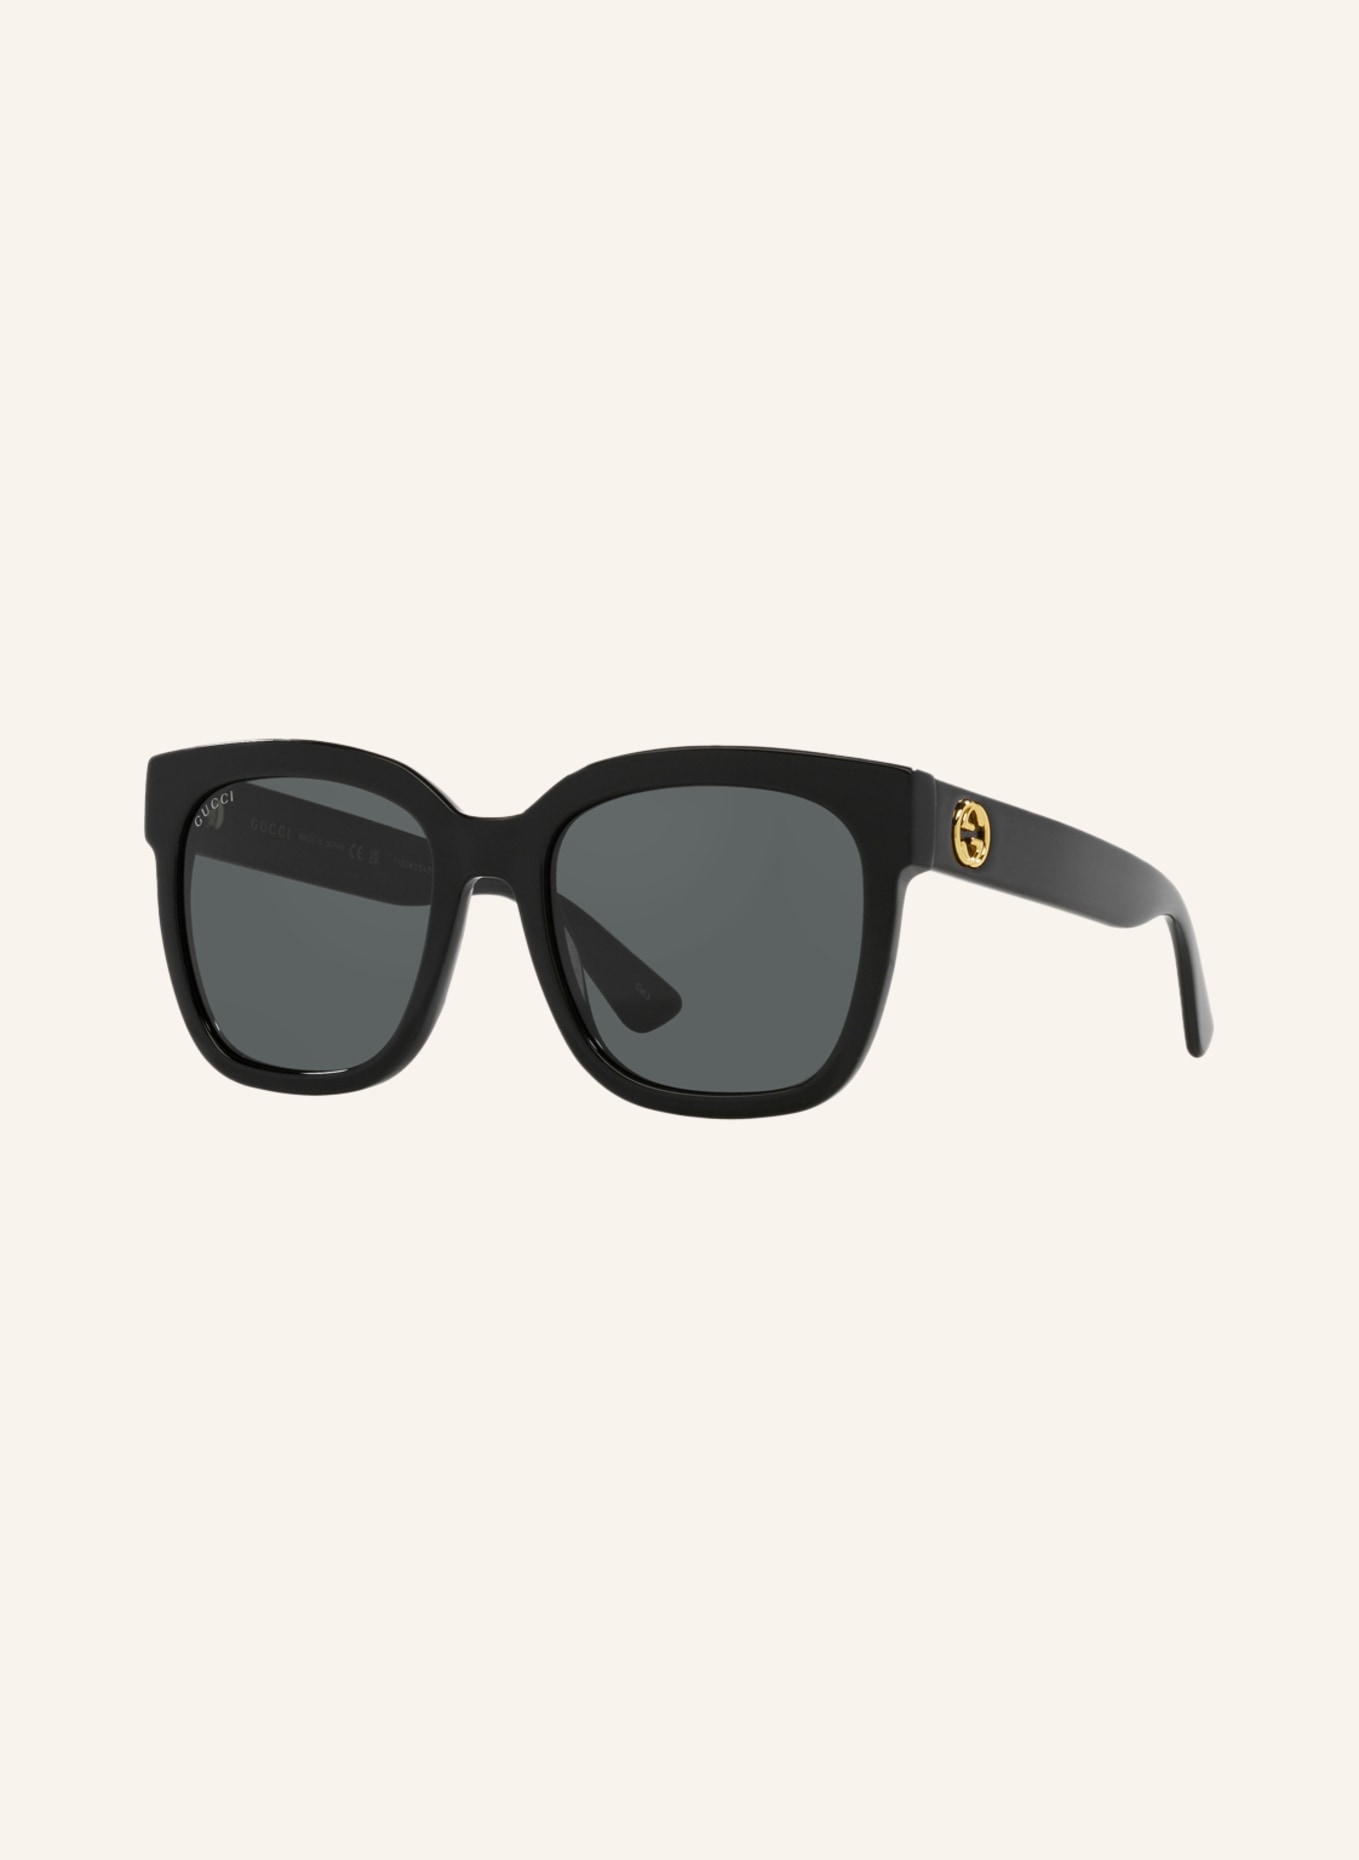 GUCCI Sunglasses GC001660 in 1100a1 - black/black